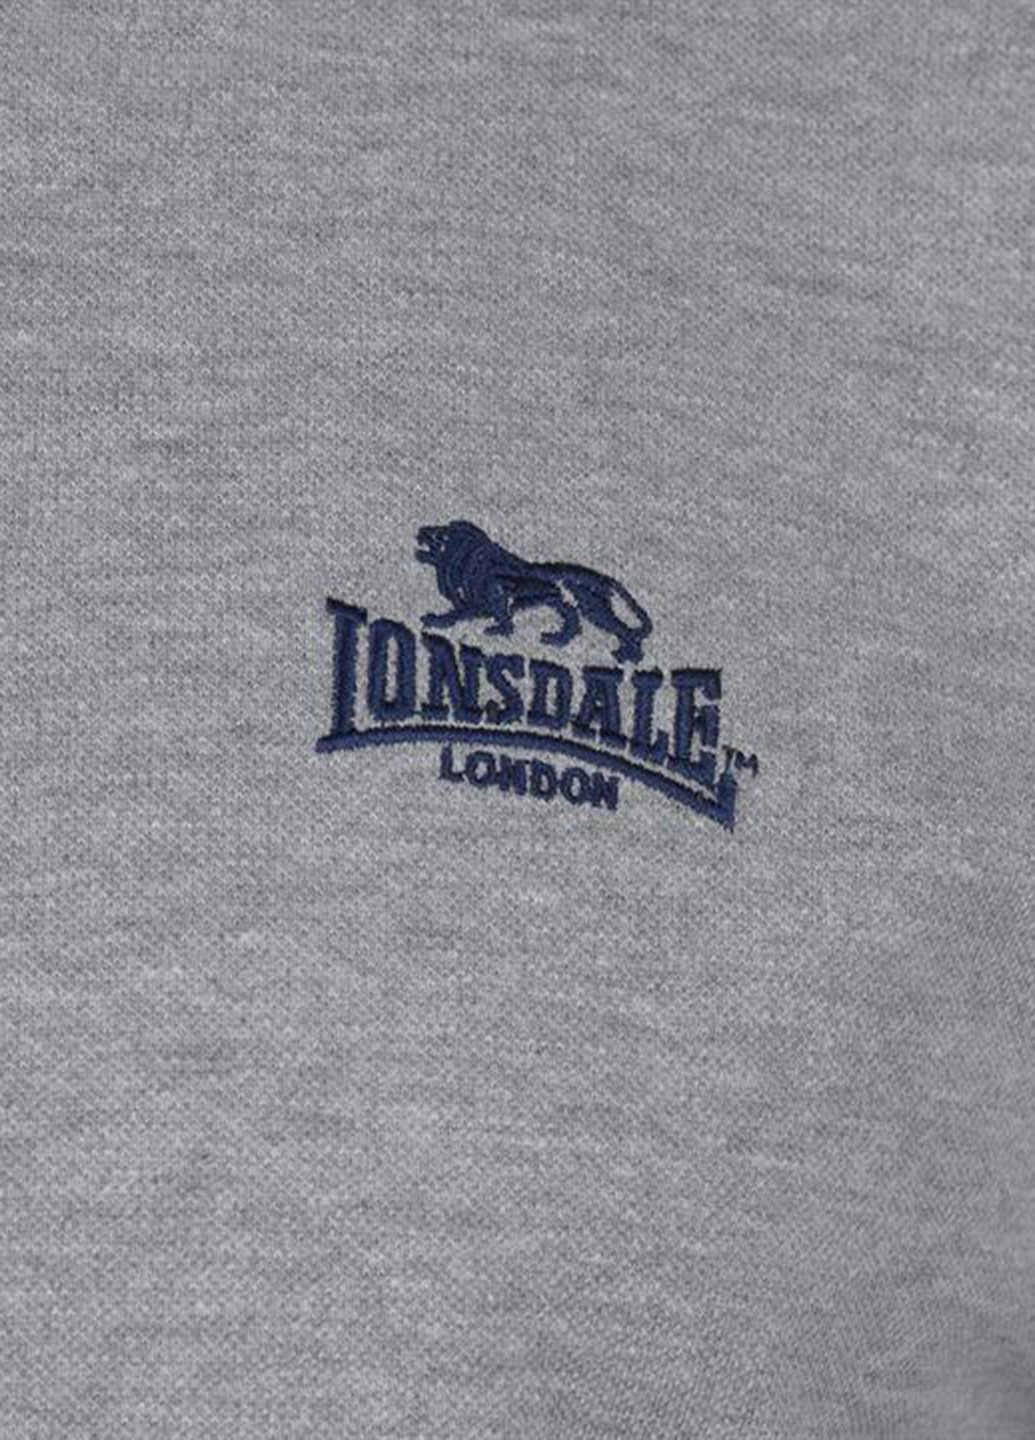 Серая футболка-поло для мужчин Lonsdale с логотипом